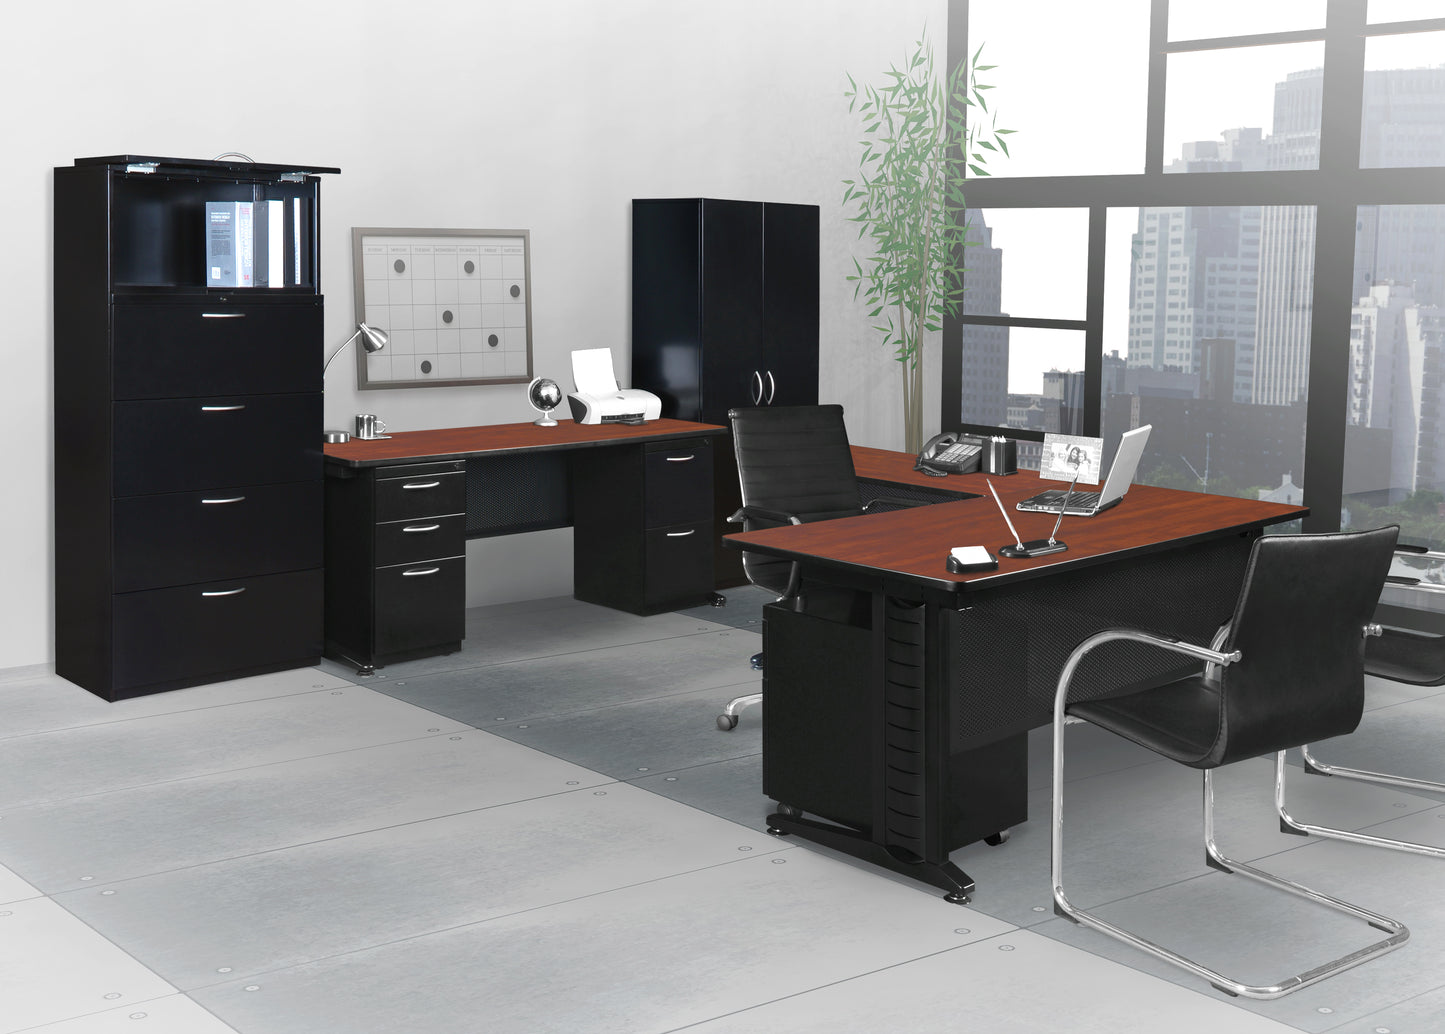 Regency Fusion 60" x 24" Teachers Desk with Double Pedestal Drawer Unit